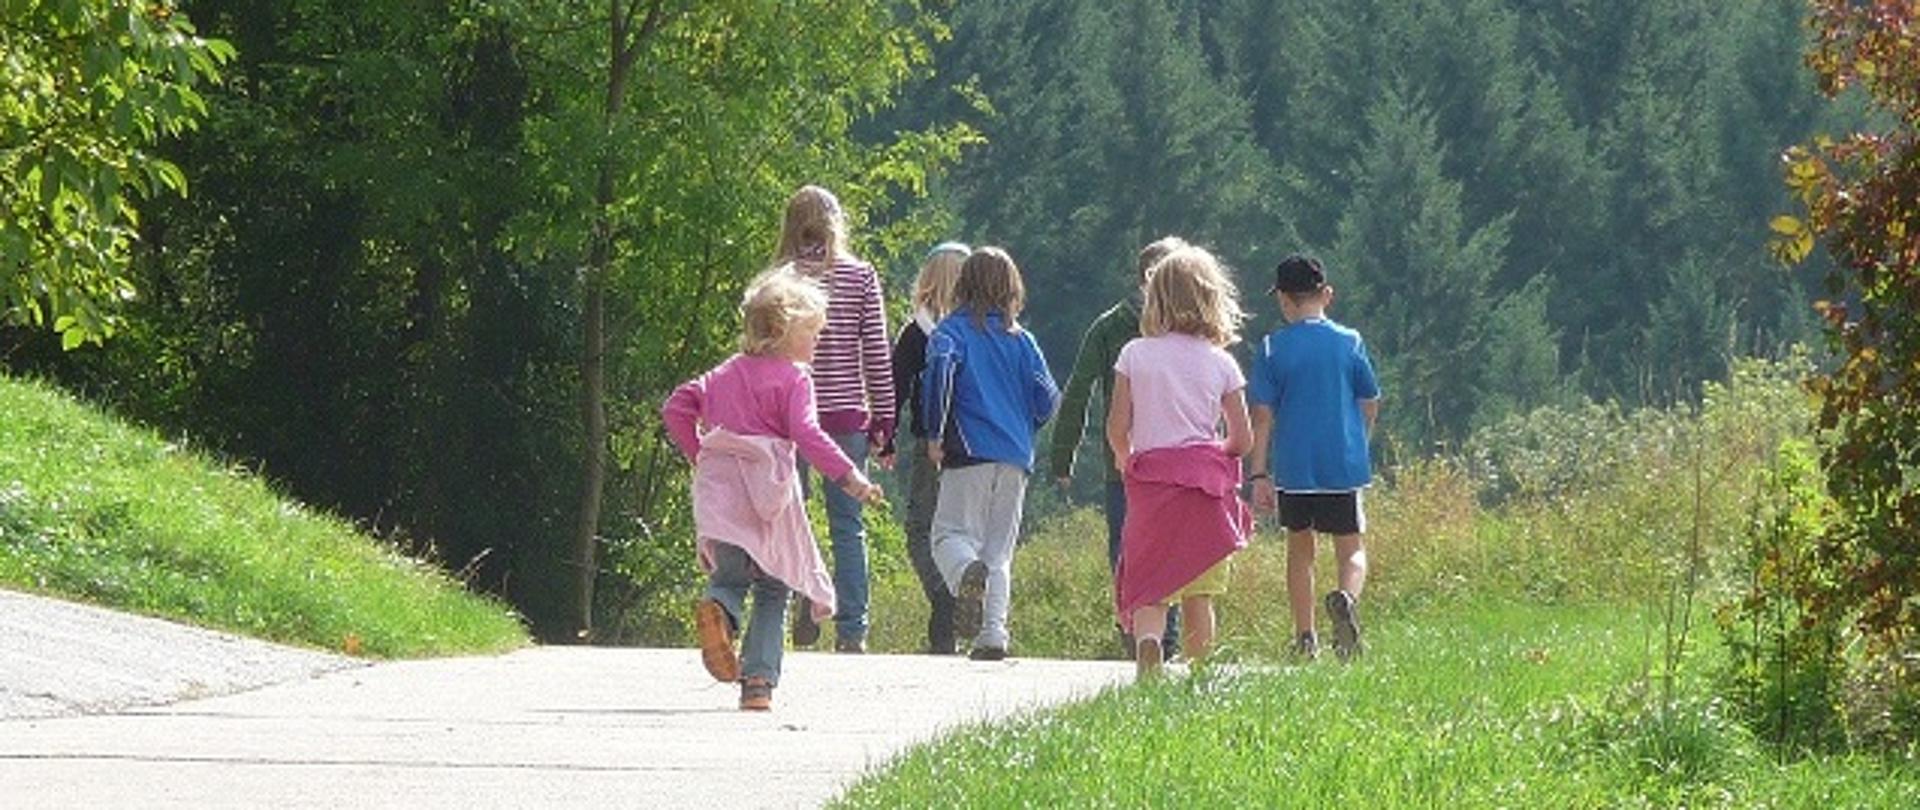 Grupa 7 dzieci na spacerze latem, idąca drogą wokół łąk i przed lasem.